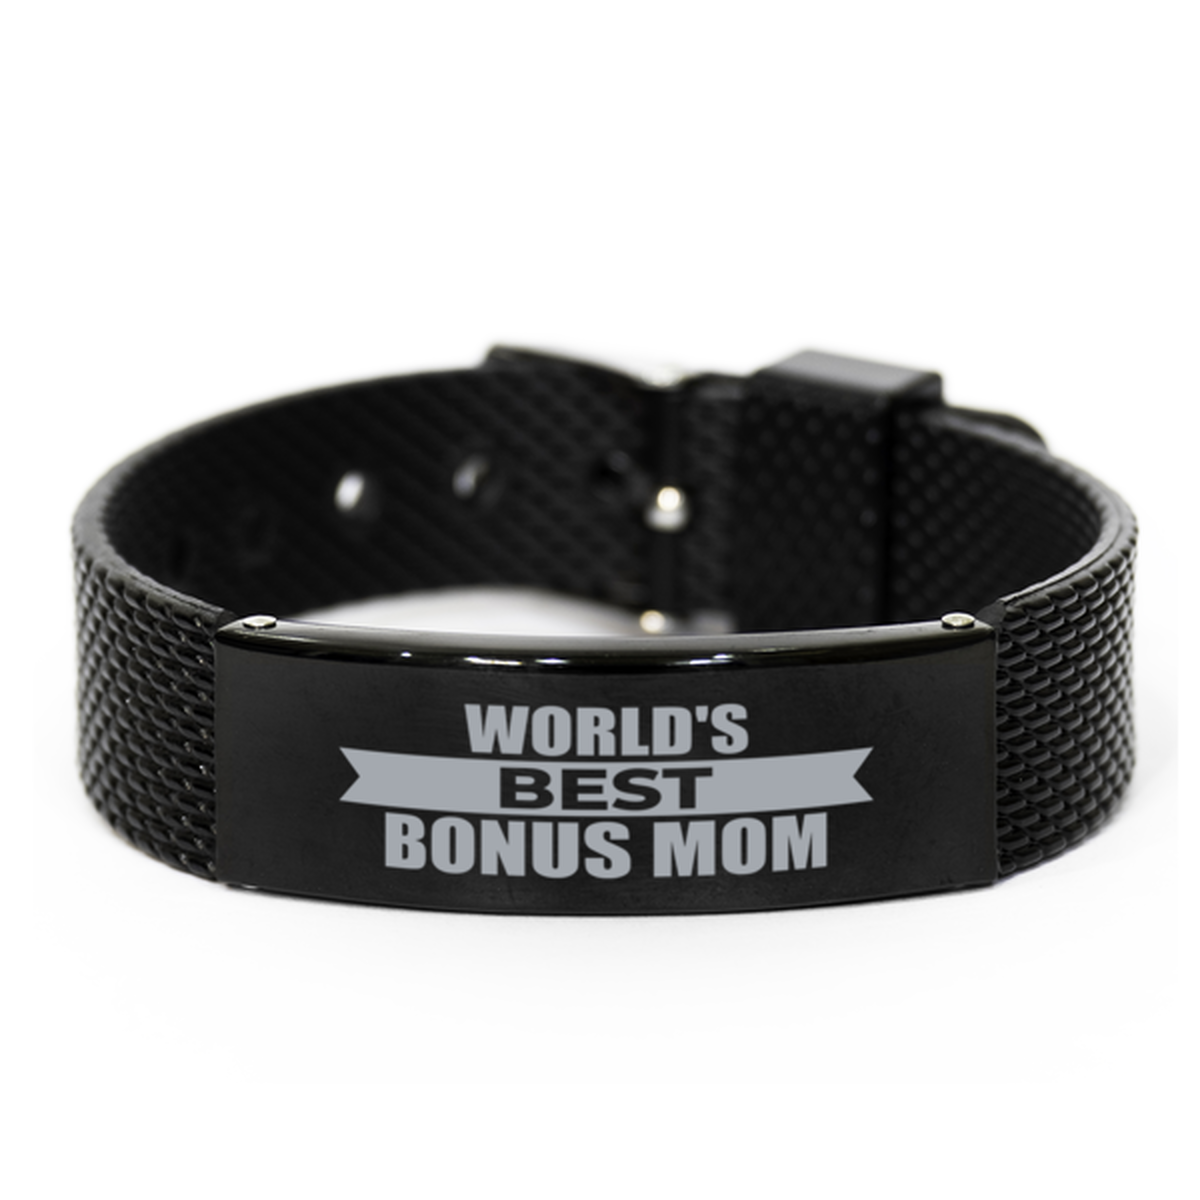 World's Best Bonus Mom Gifts, Gag Engraved Bracelet For Bonus Mom, Best Family Gifts For Women